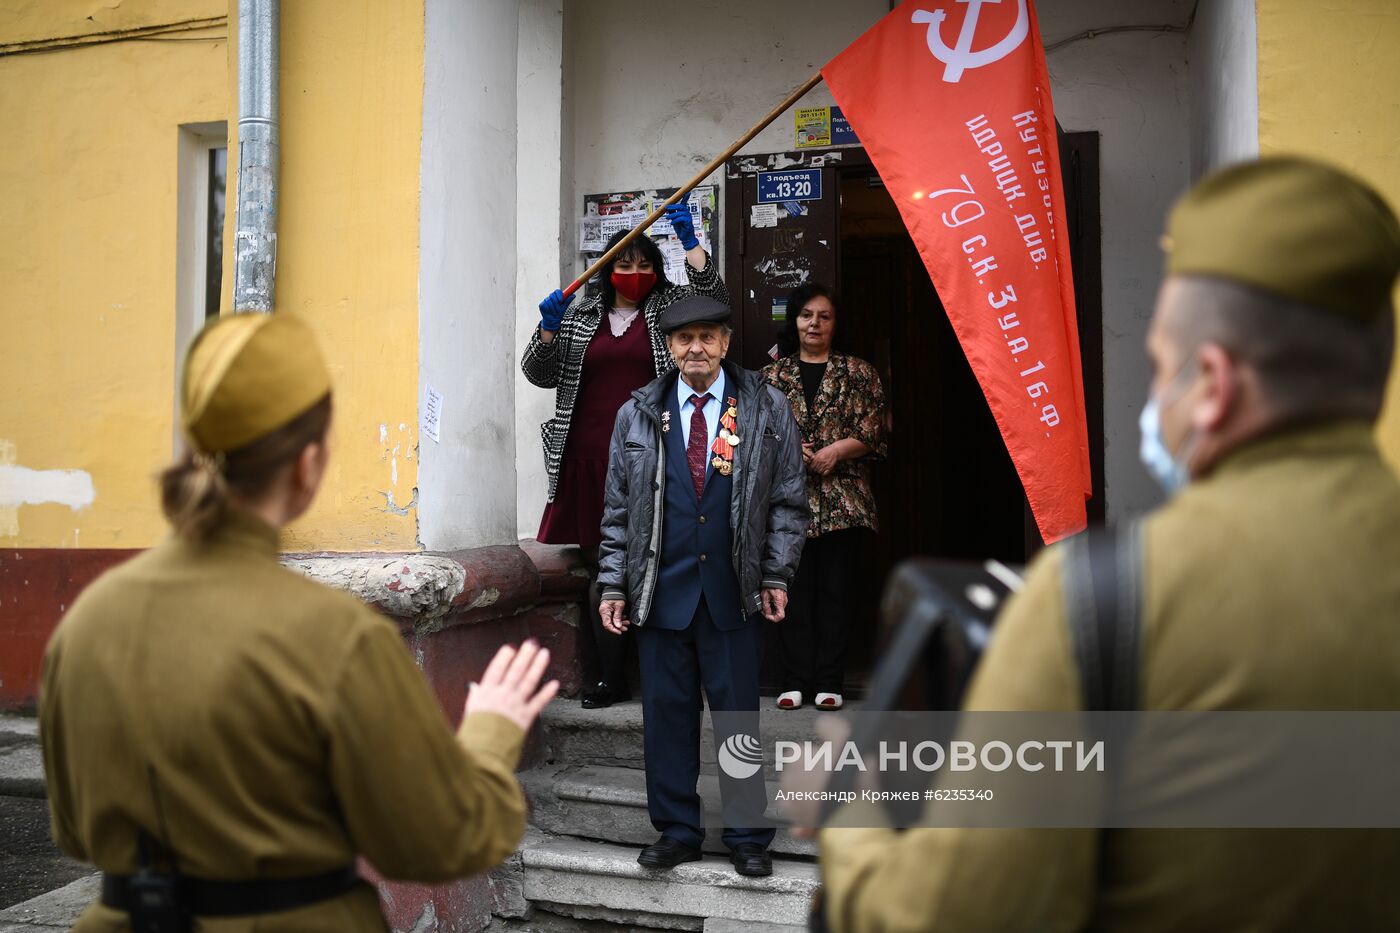 Персональные парады для ветеранов Великой Отечественной войны